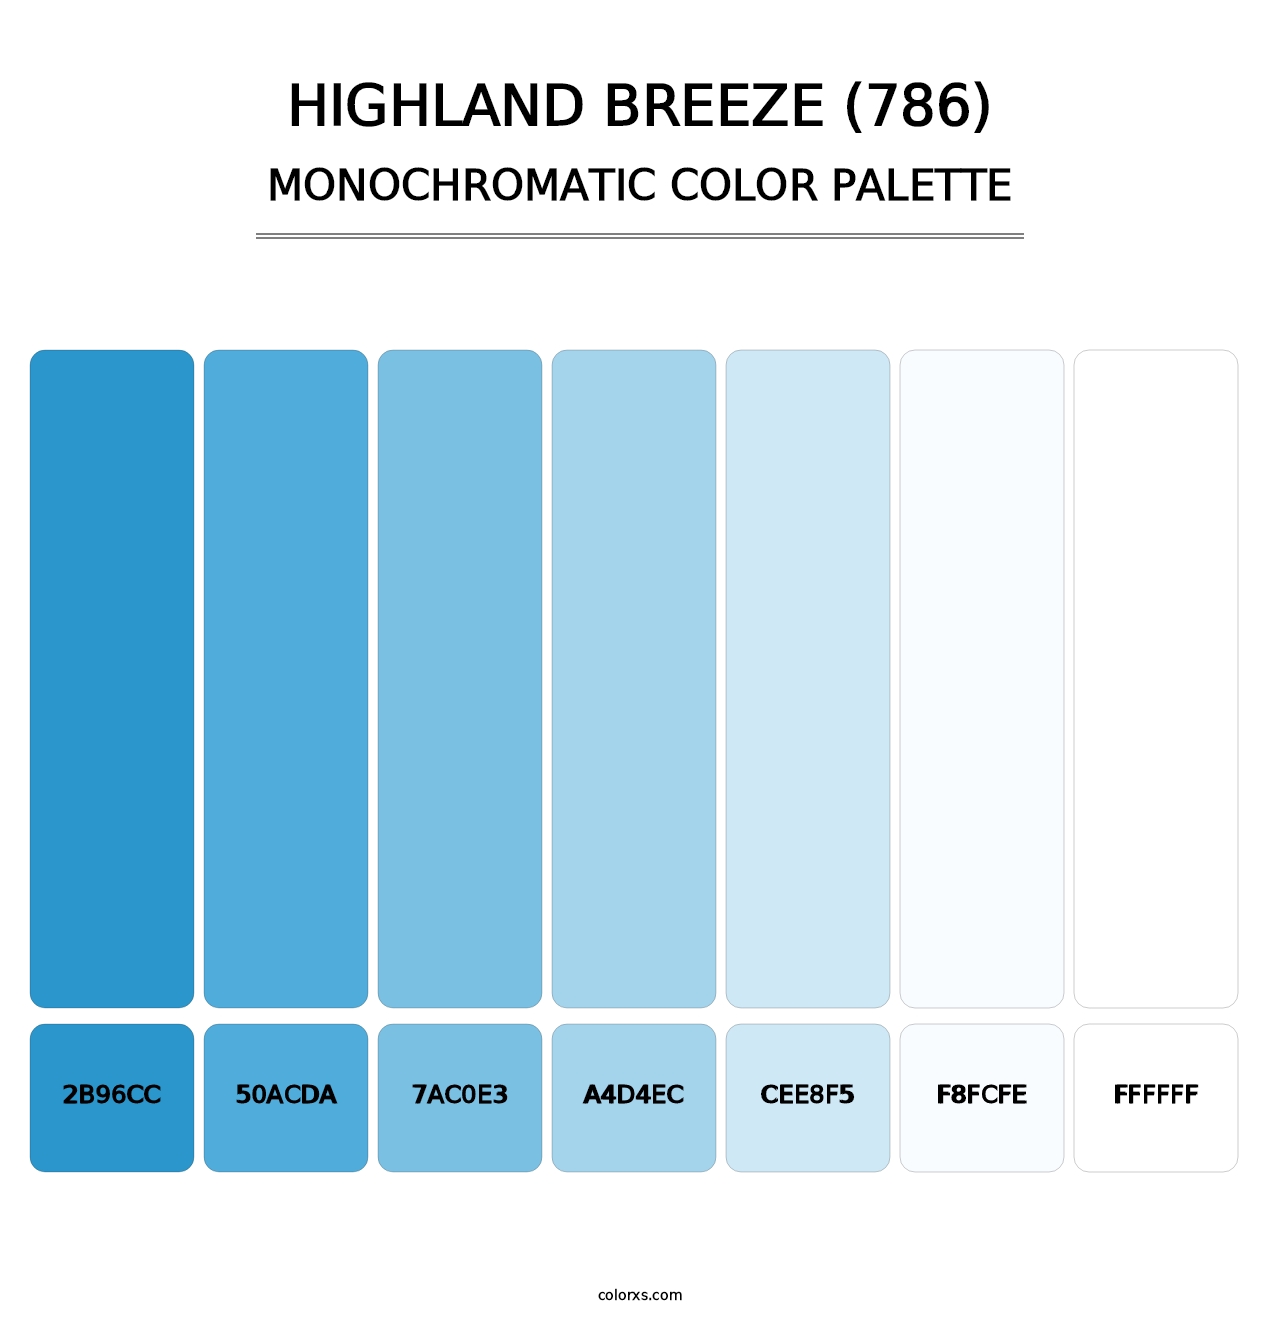 Highland Breeze (786) - Monochromatic Color Palette